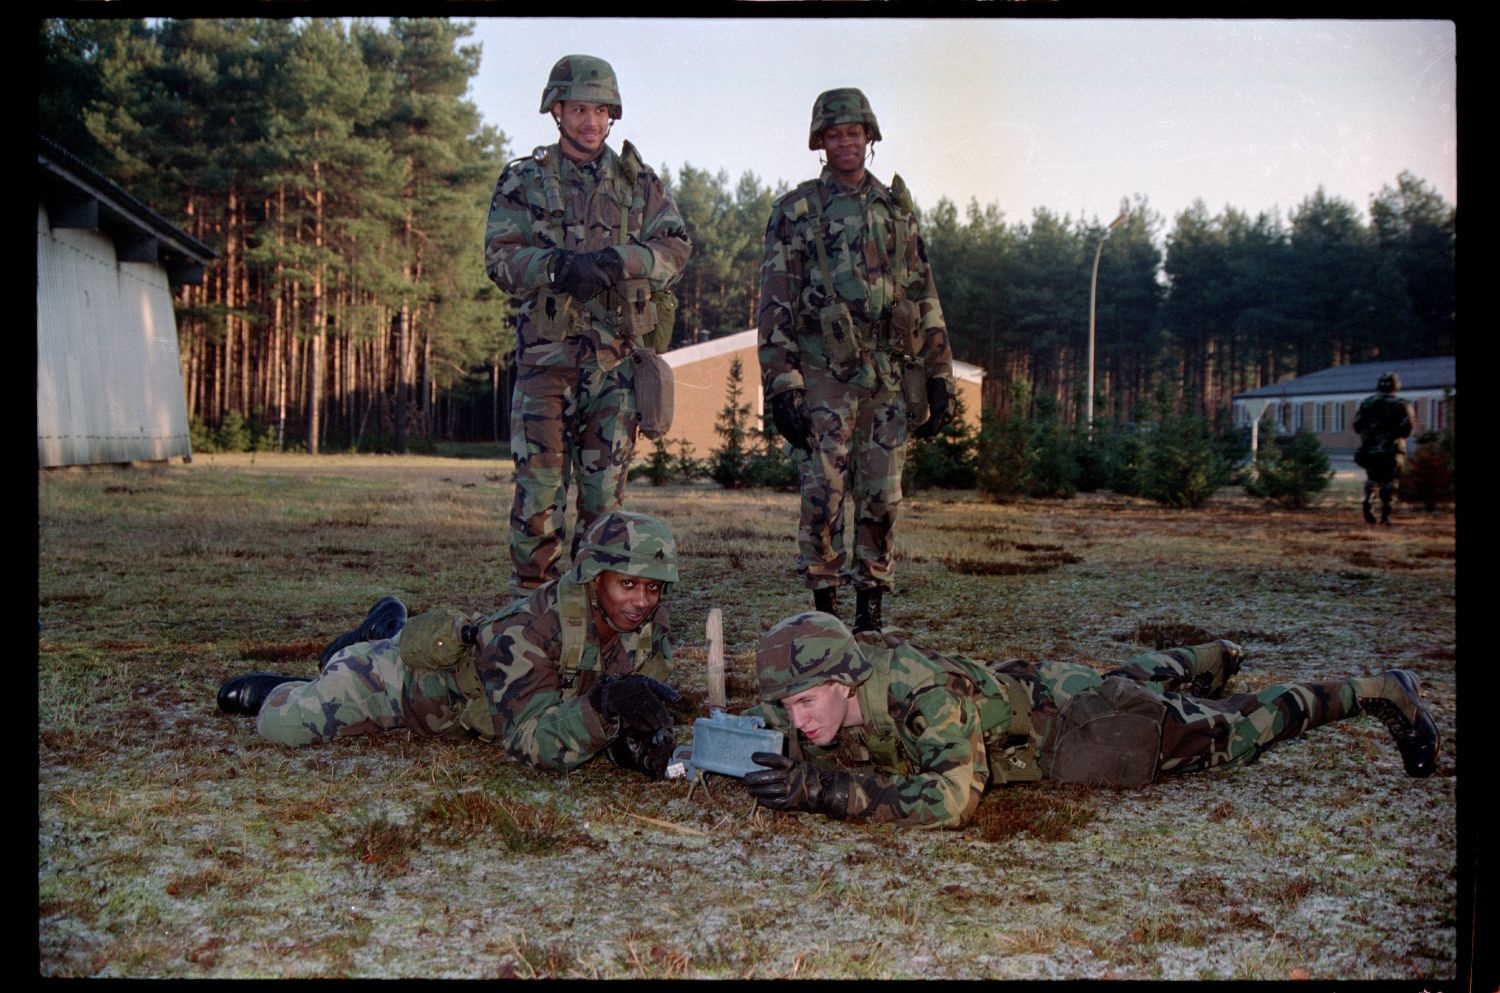 Fotografie: Trainingsübung der U.S. Army Berlin Brigade auf dem Truppenübungsplatz Ehra-Lessien in Niedersachsen